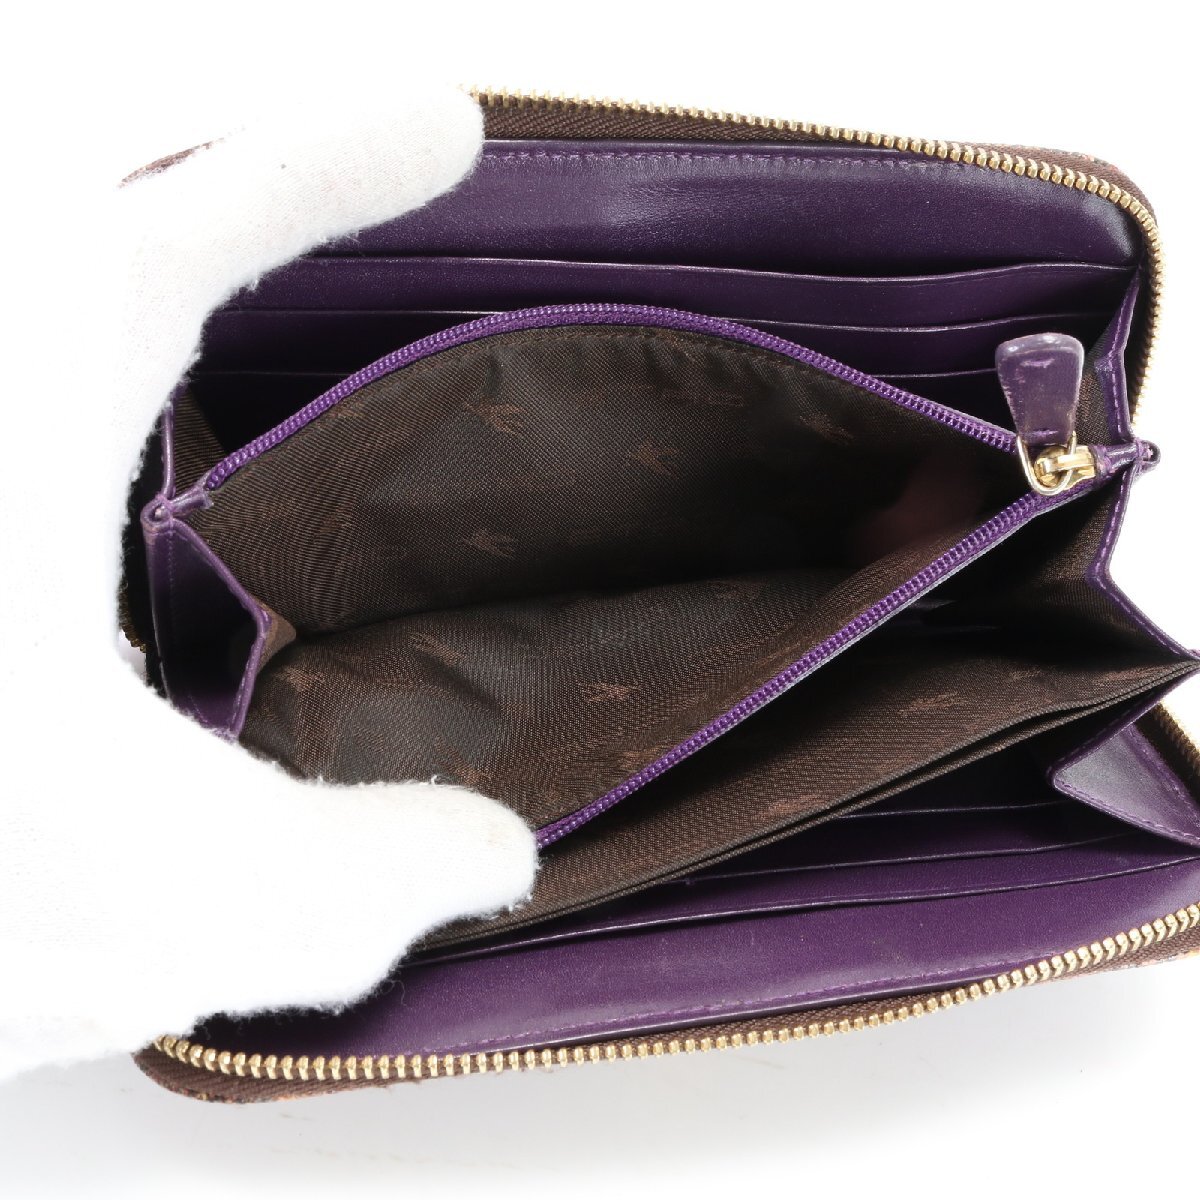 1 jpy # beautiful goods # Etro peiz Lee long wallet long wallet round fastener popular standard stylish leather men's lady's MJT 1101-J14